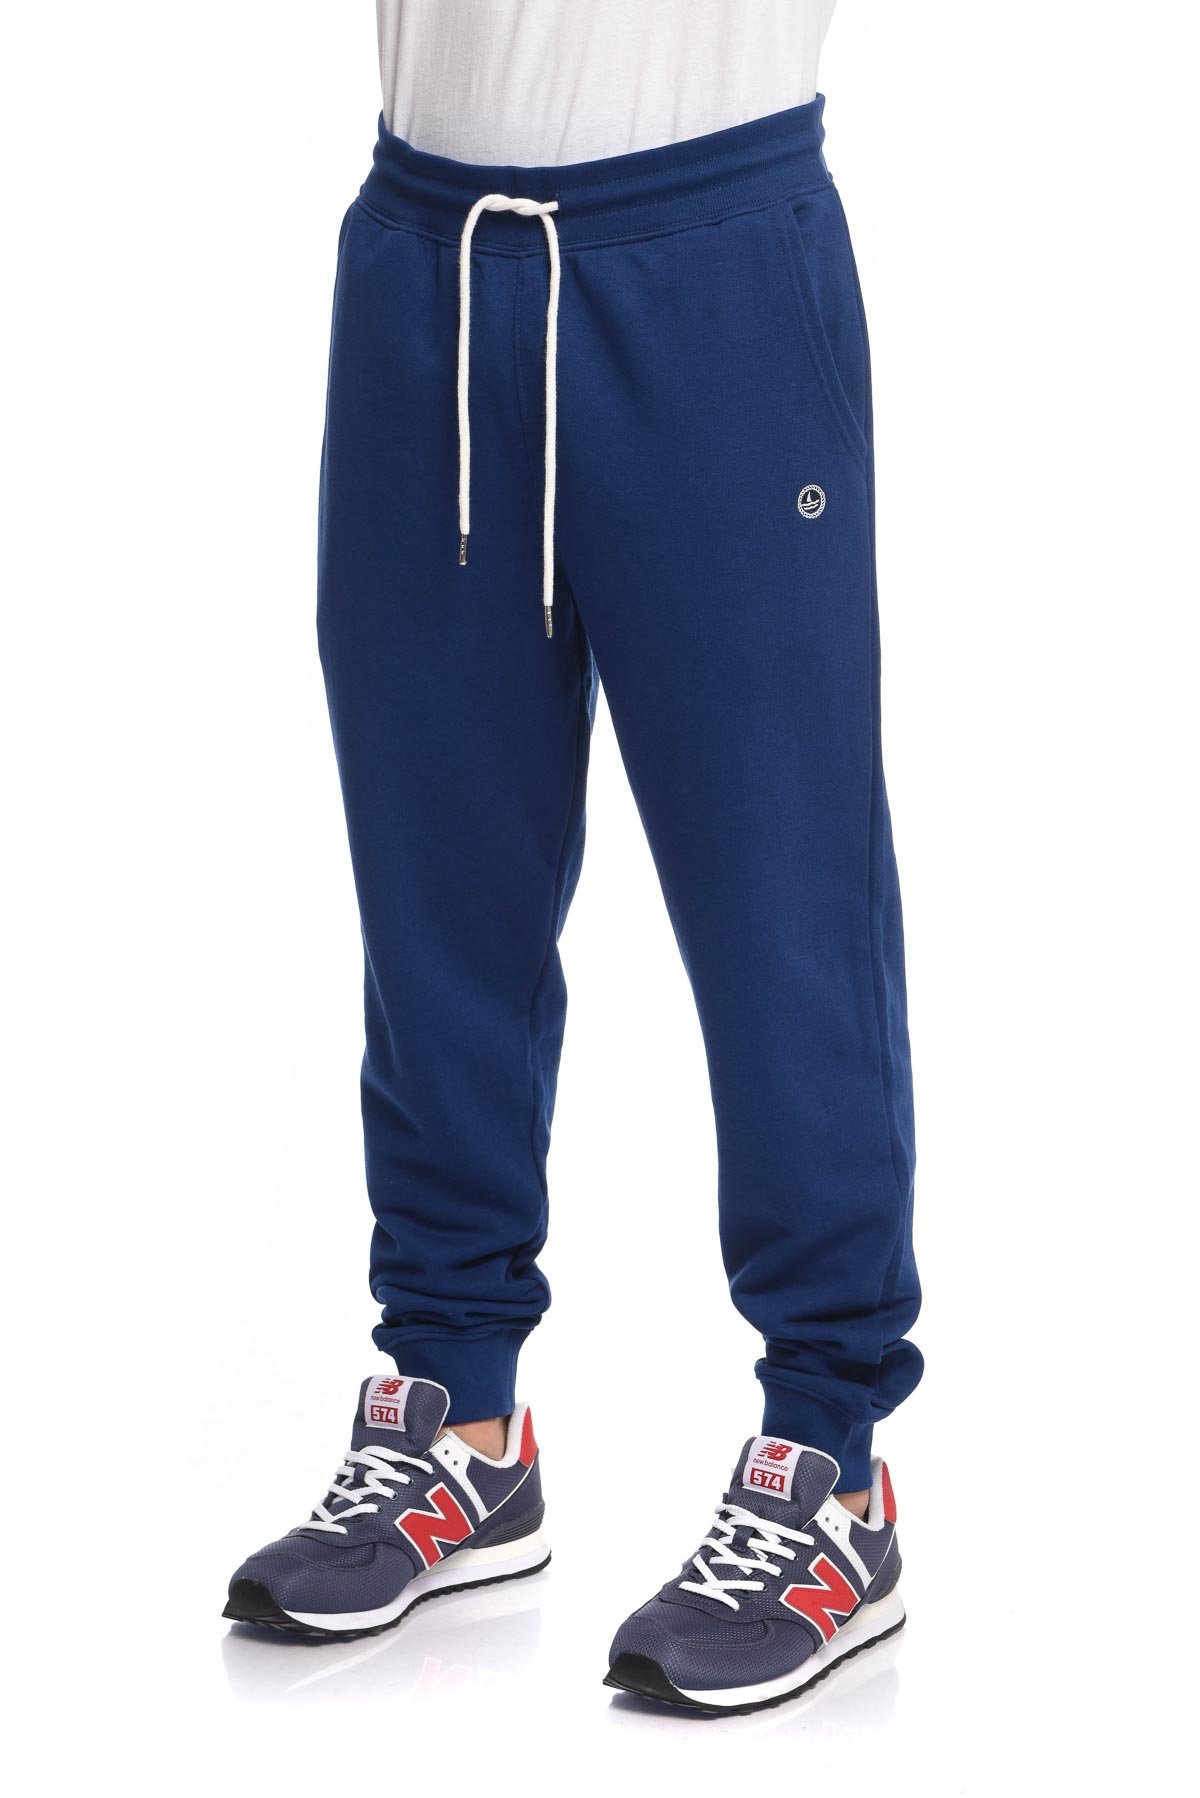 Спортивные брюки мужские NAVY SAIL NYC2701 синие M